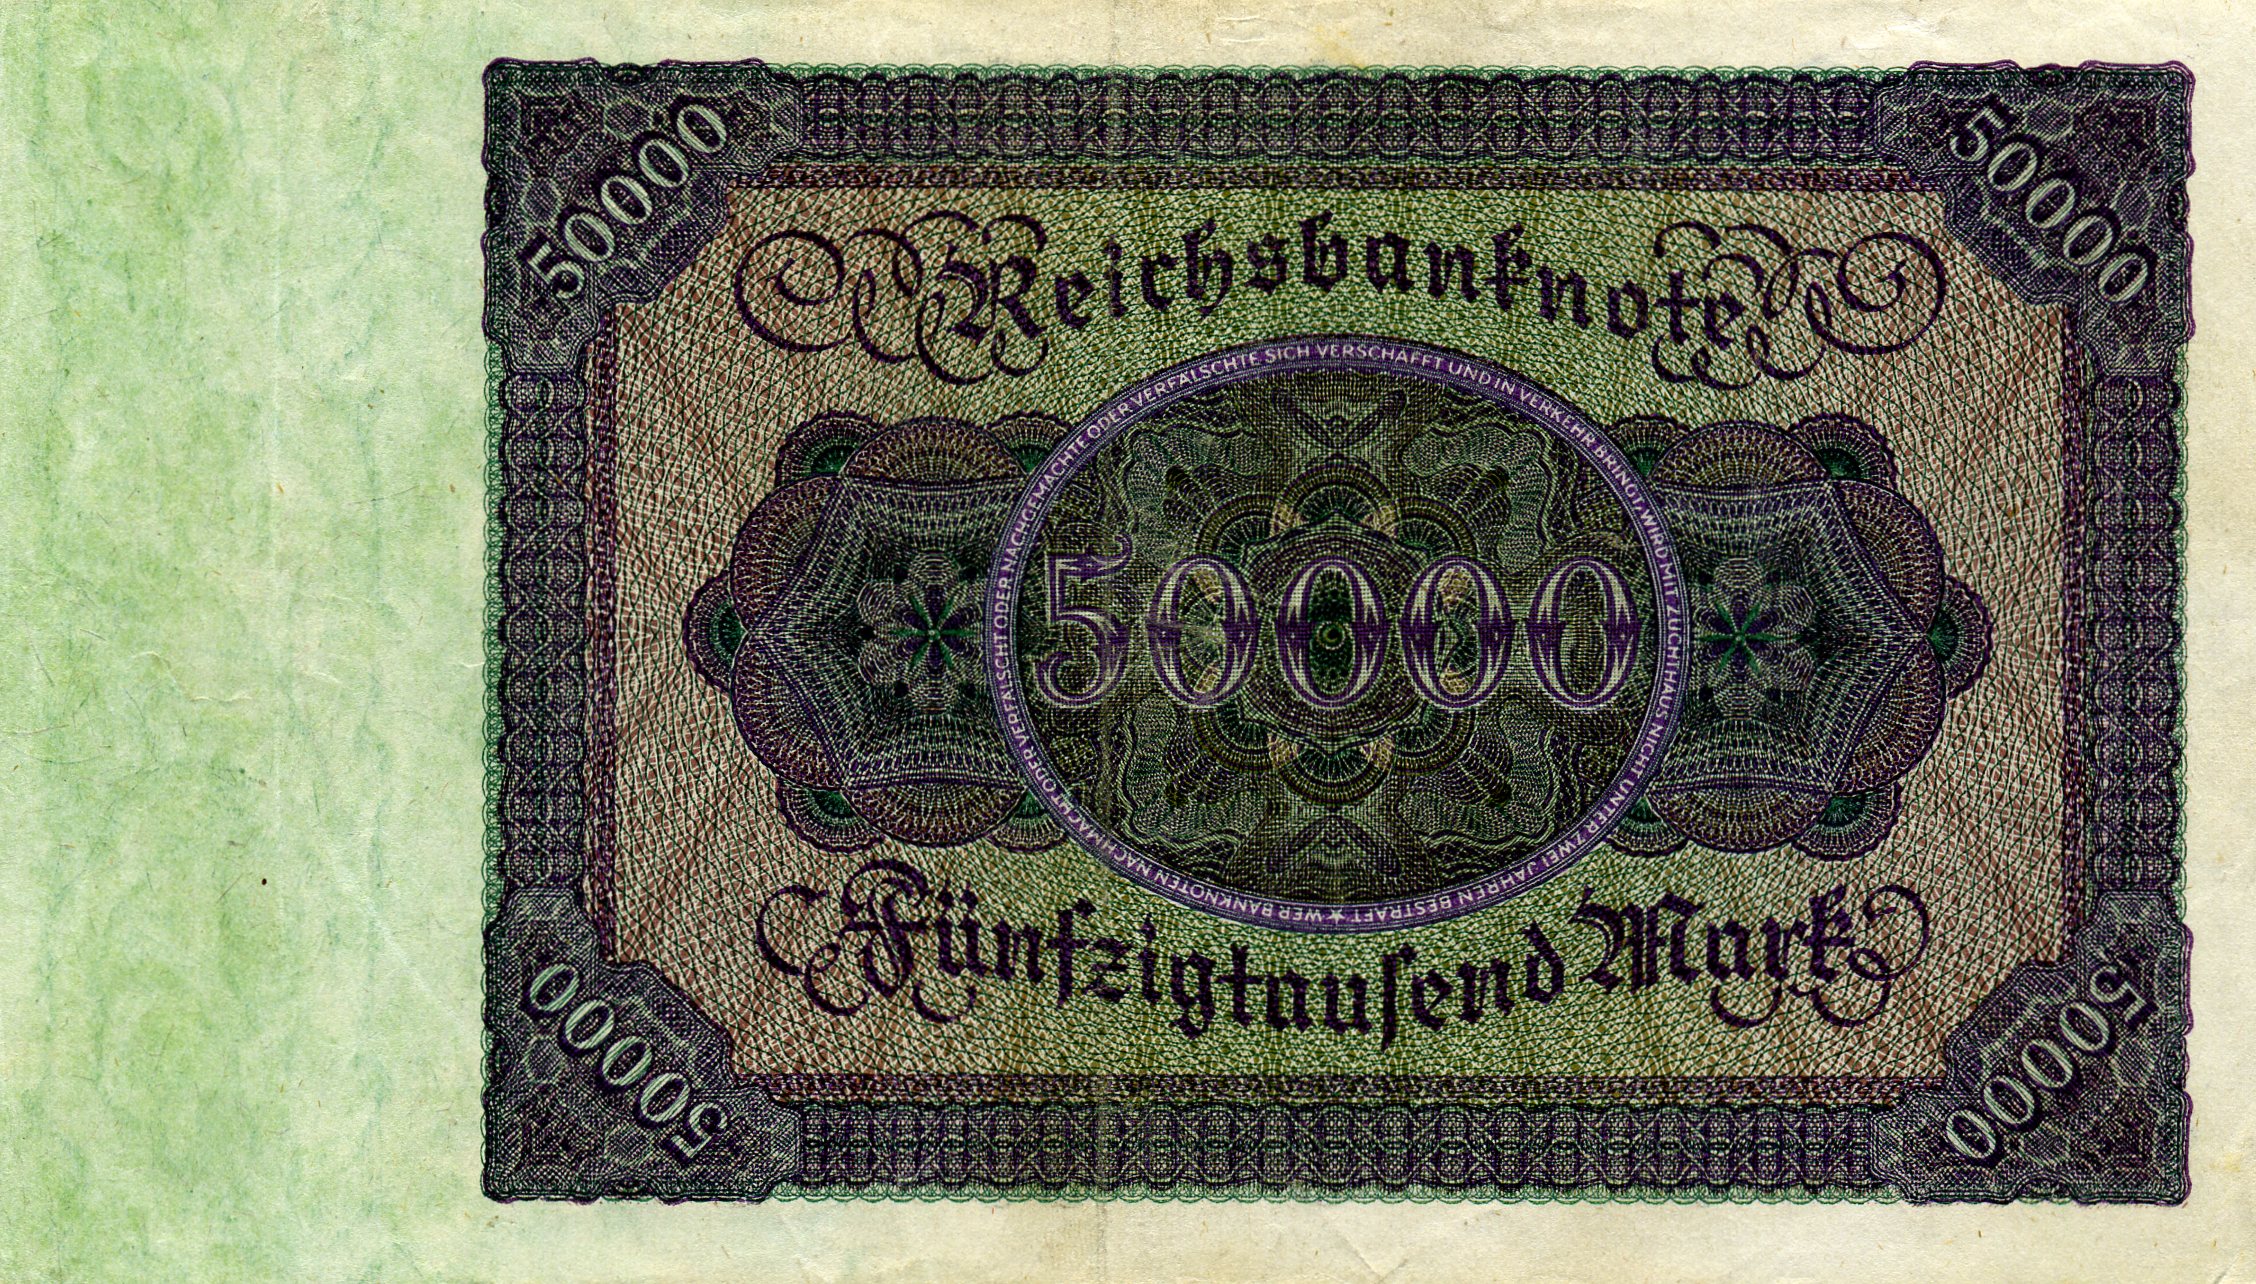 50000 марок 19 ноября 1922 года. Реверс. Реферат Рефератович.